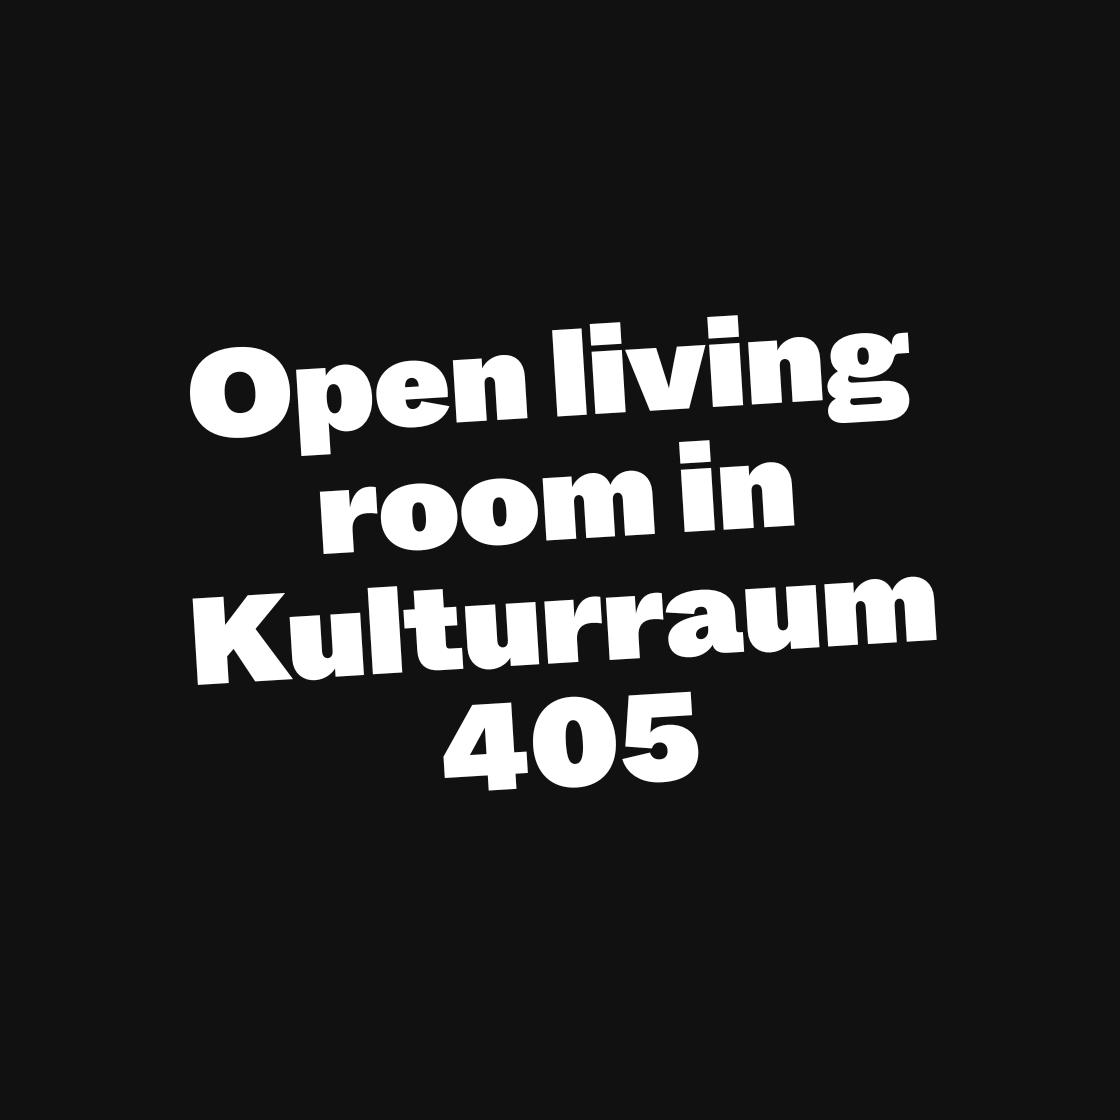 Open living room in Kulturraum 405